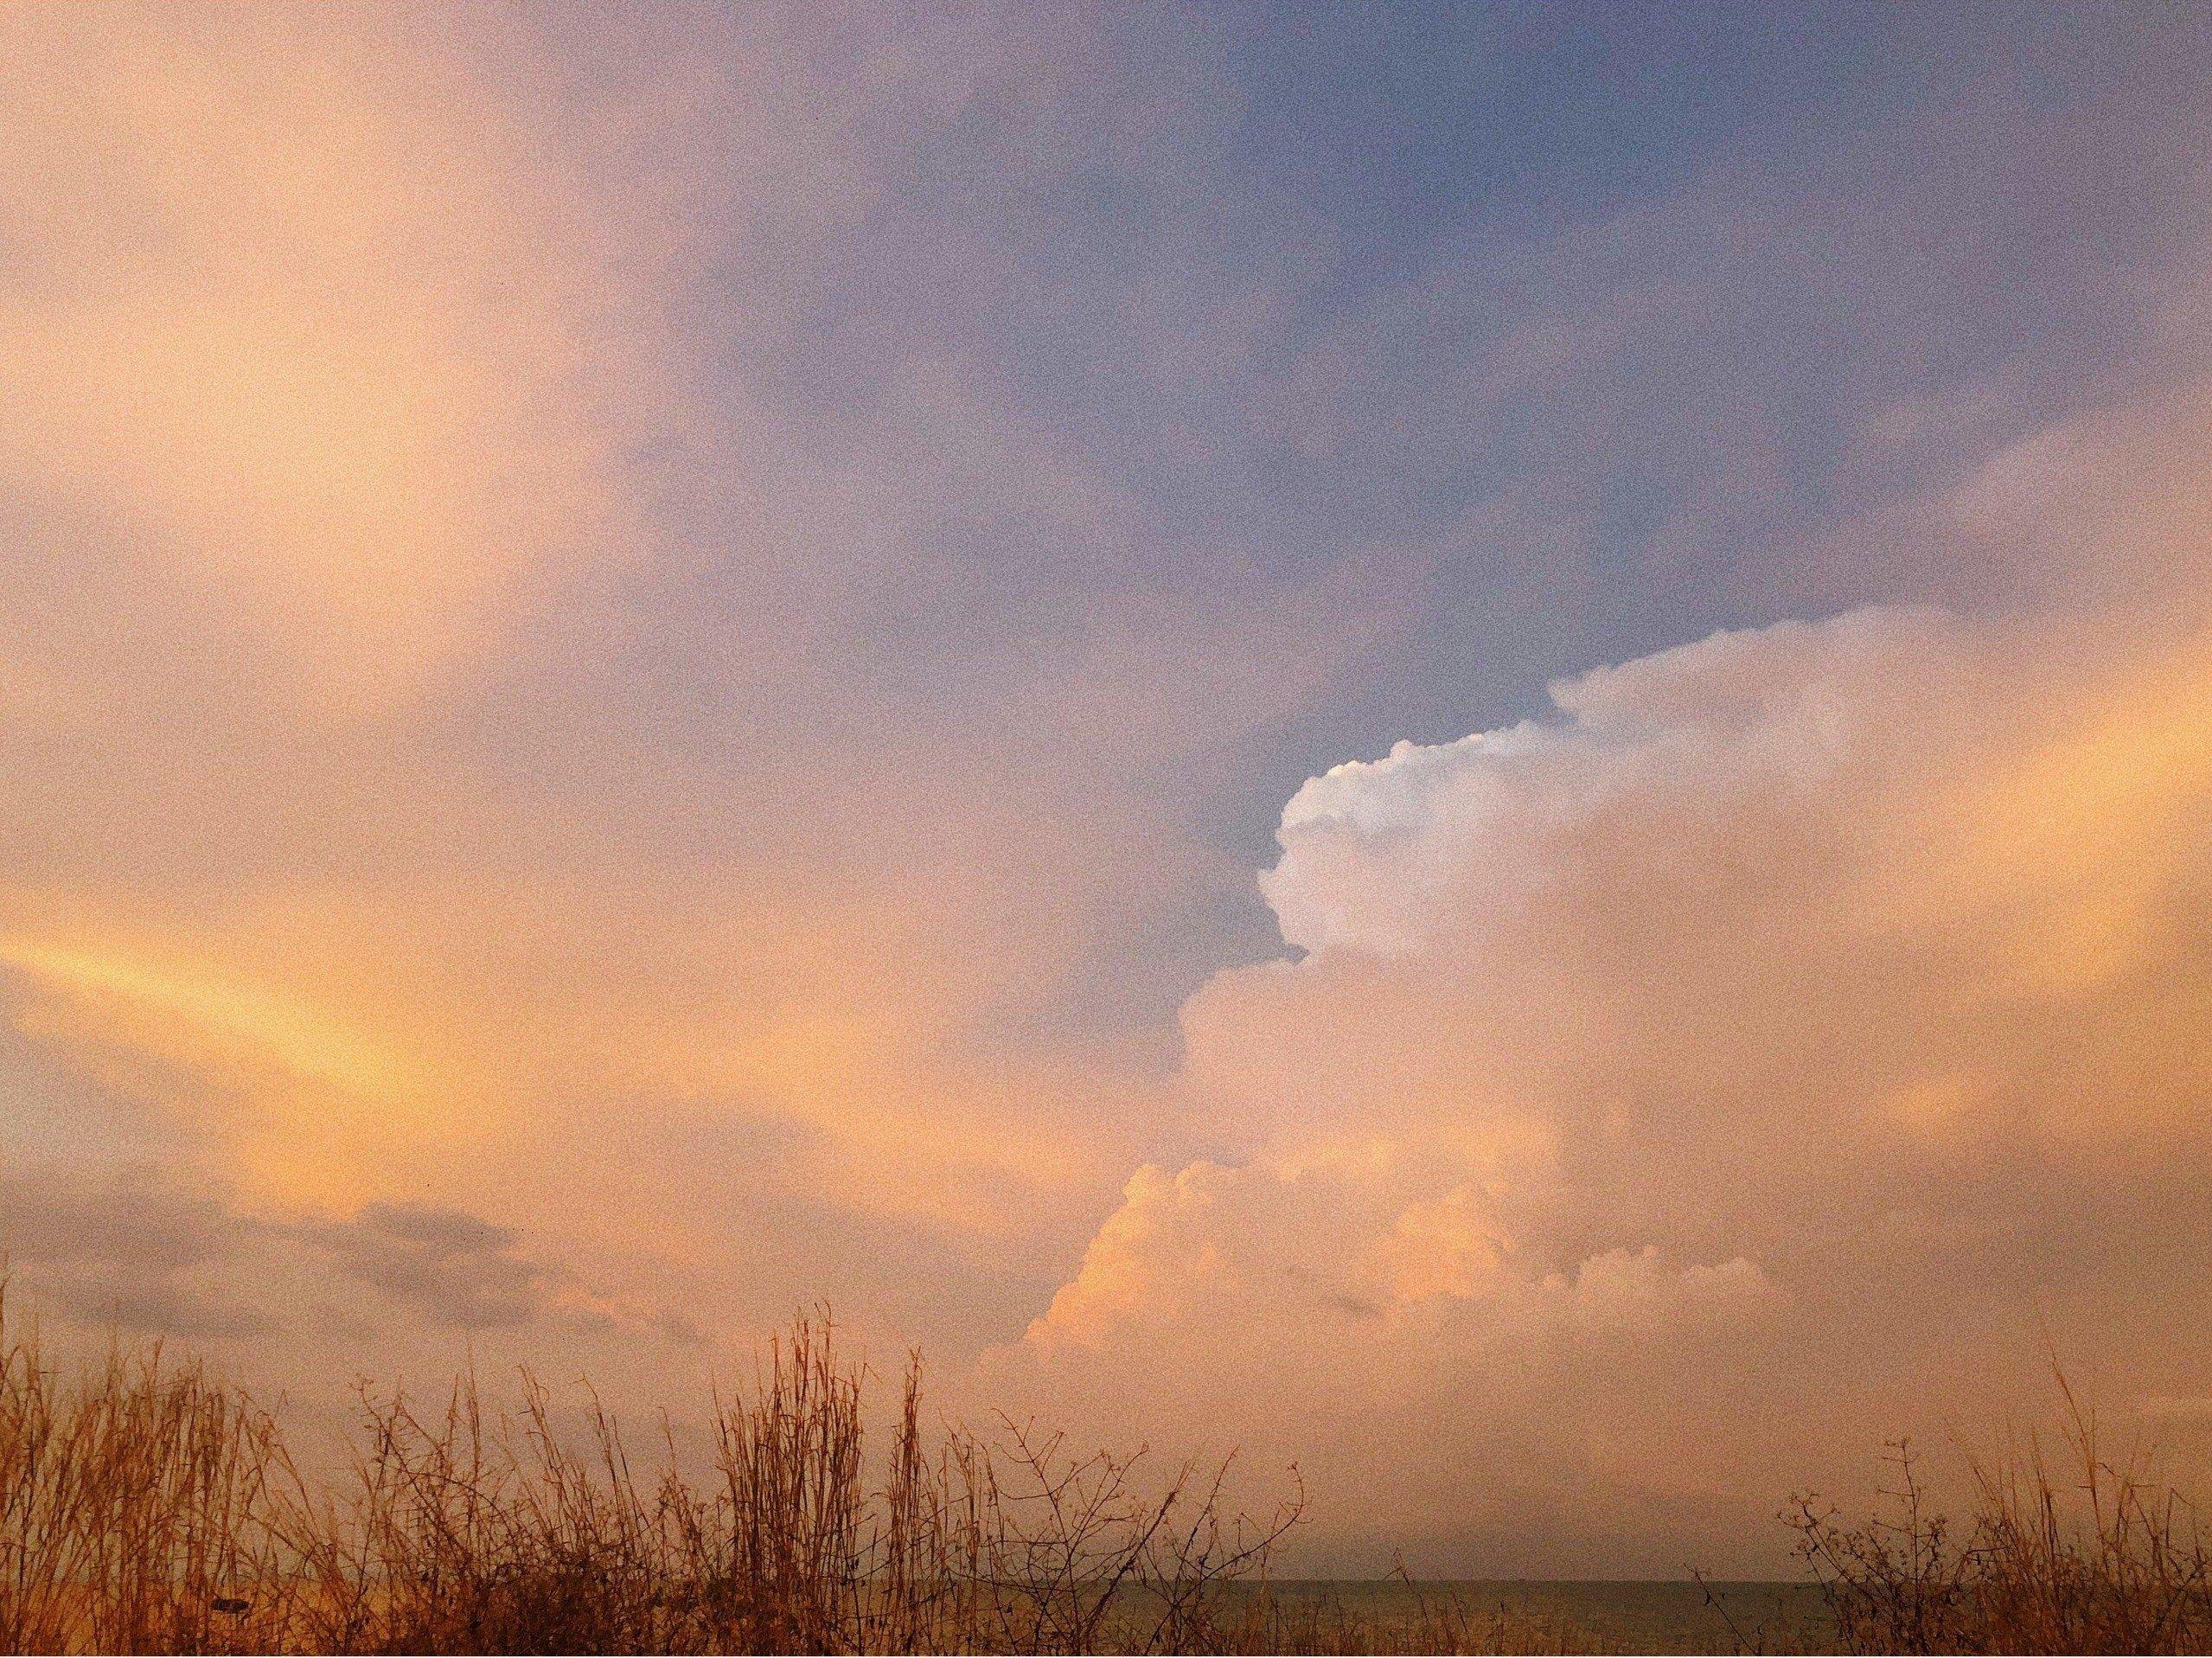 Mê mẩn màu của đám mây hoàng hôn được chụp vội trên đường về homestay (Nguồn: minhlakhenh).